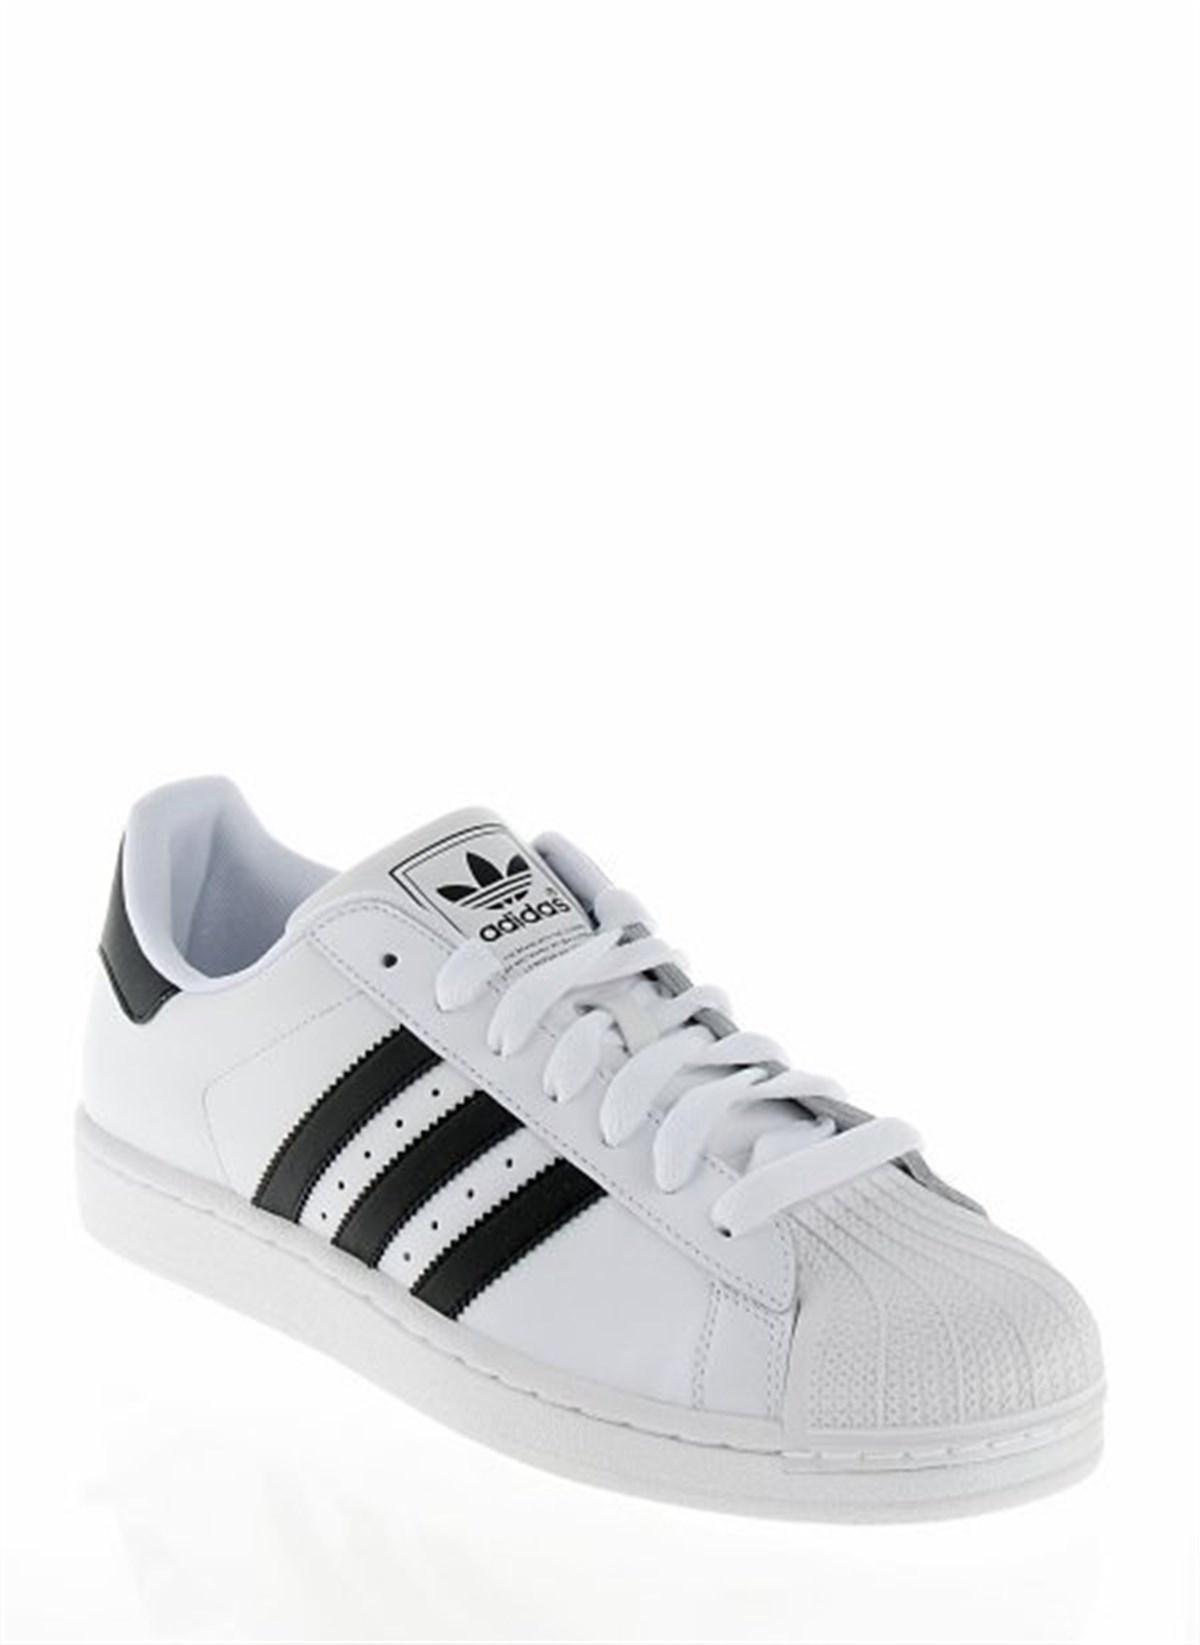 Adidas Superstar II Beyaz Siyah Erkek Günlük Spor Ayakkabı G17068